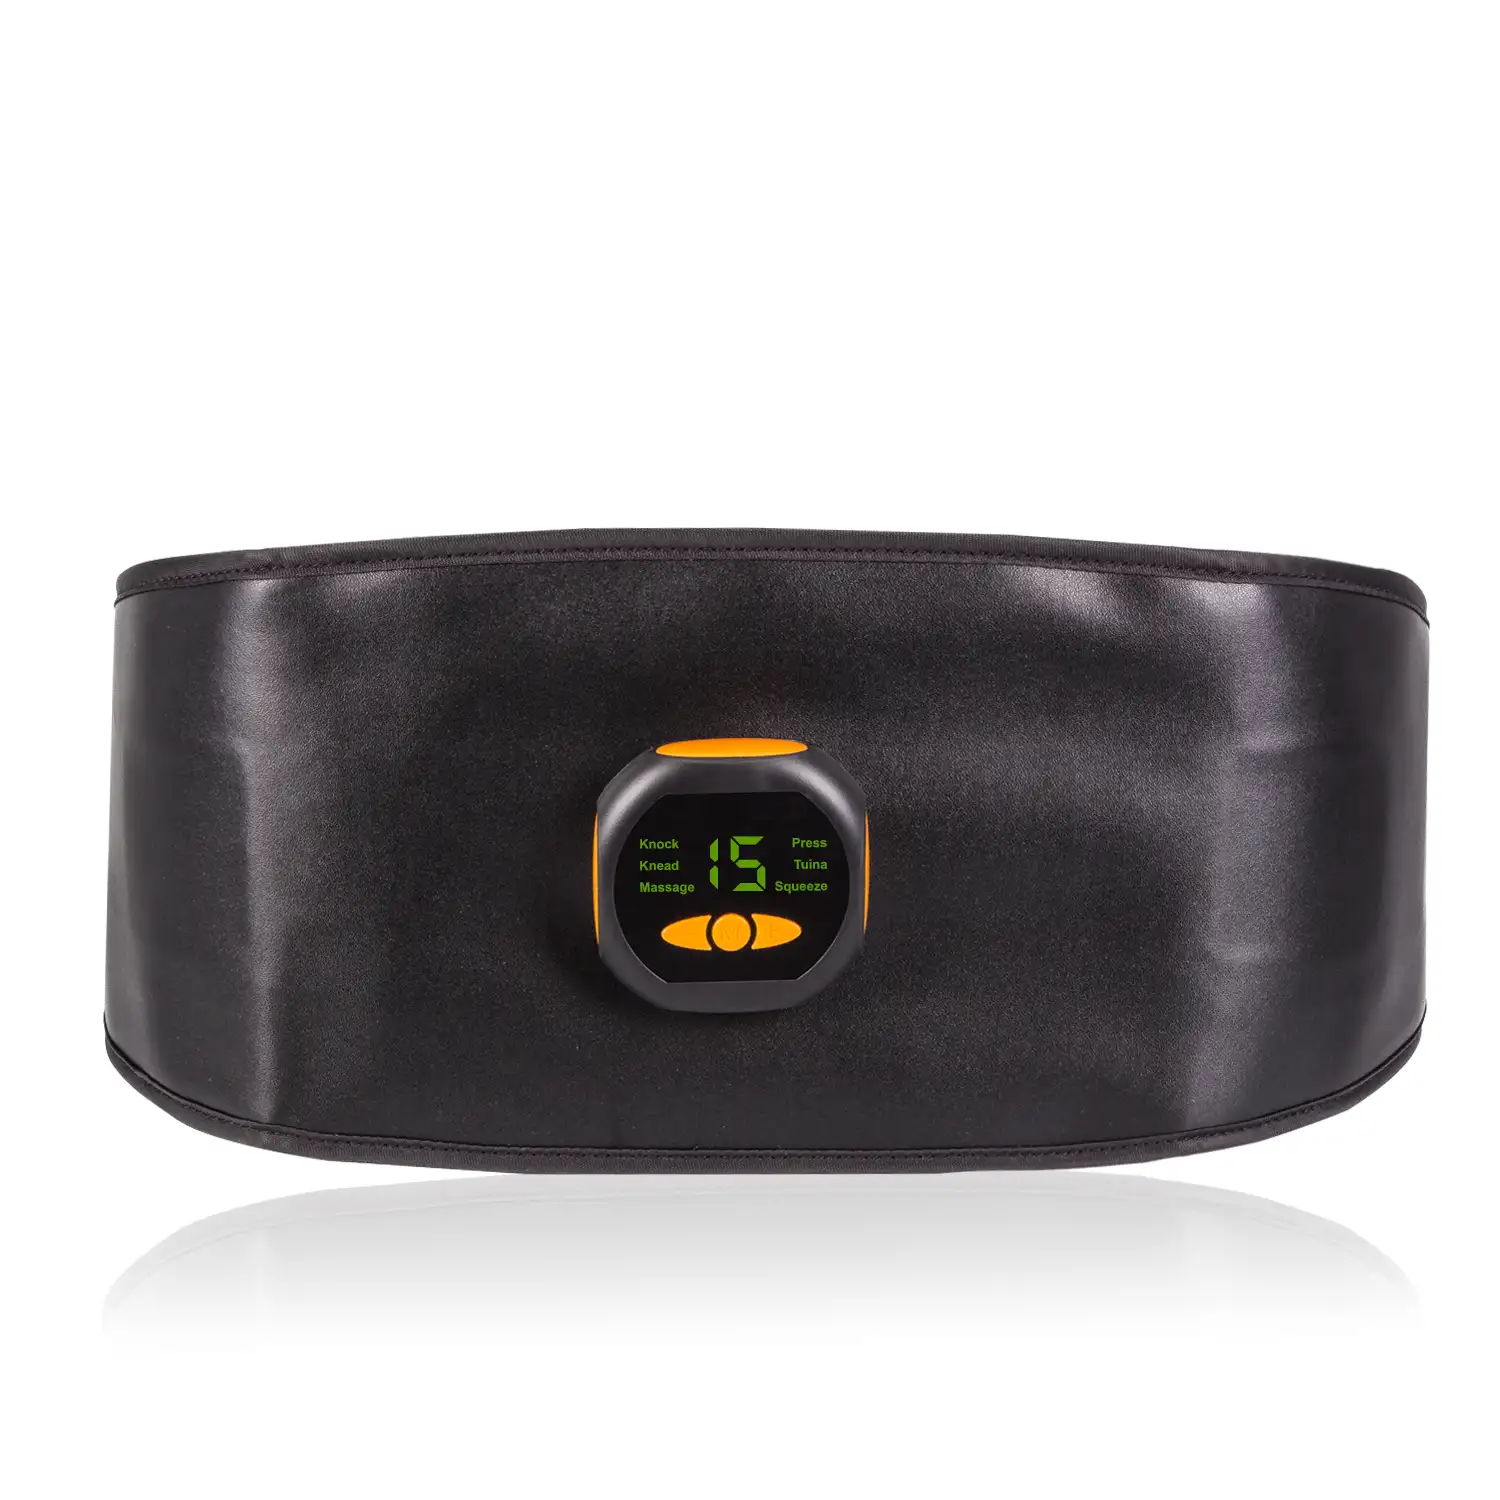 Cinturón estimulador eléctrico de cintura y abdomen EMS Smart Fitness. 15 intensidades, 6 modos. Promueve la circulación sanguínea.